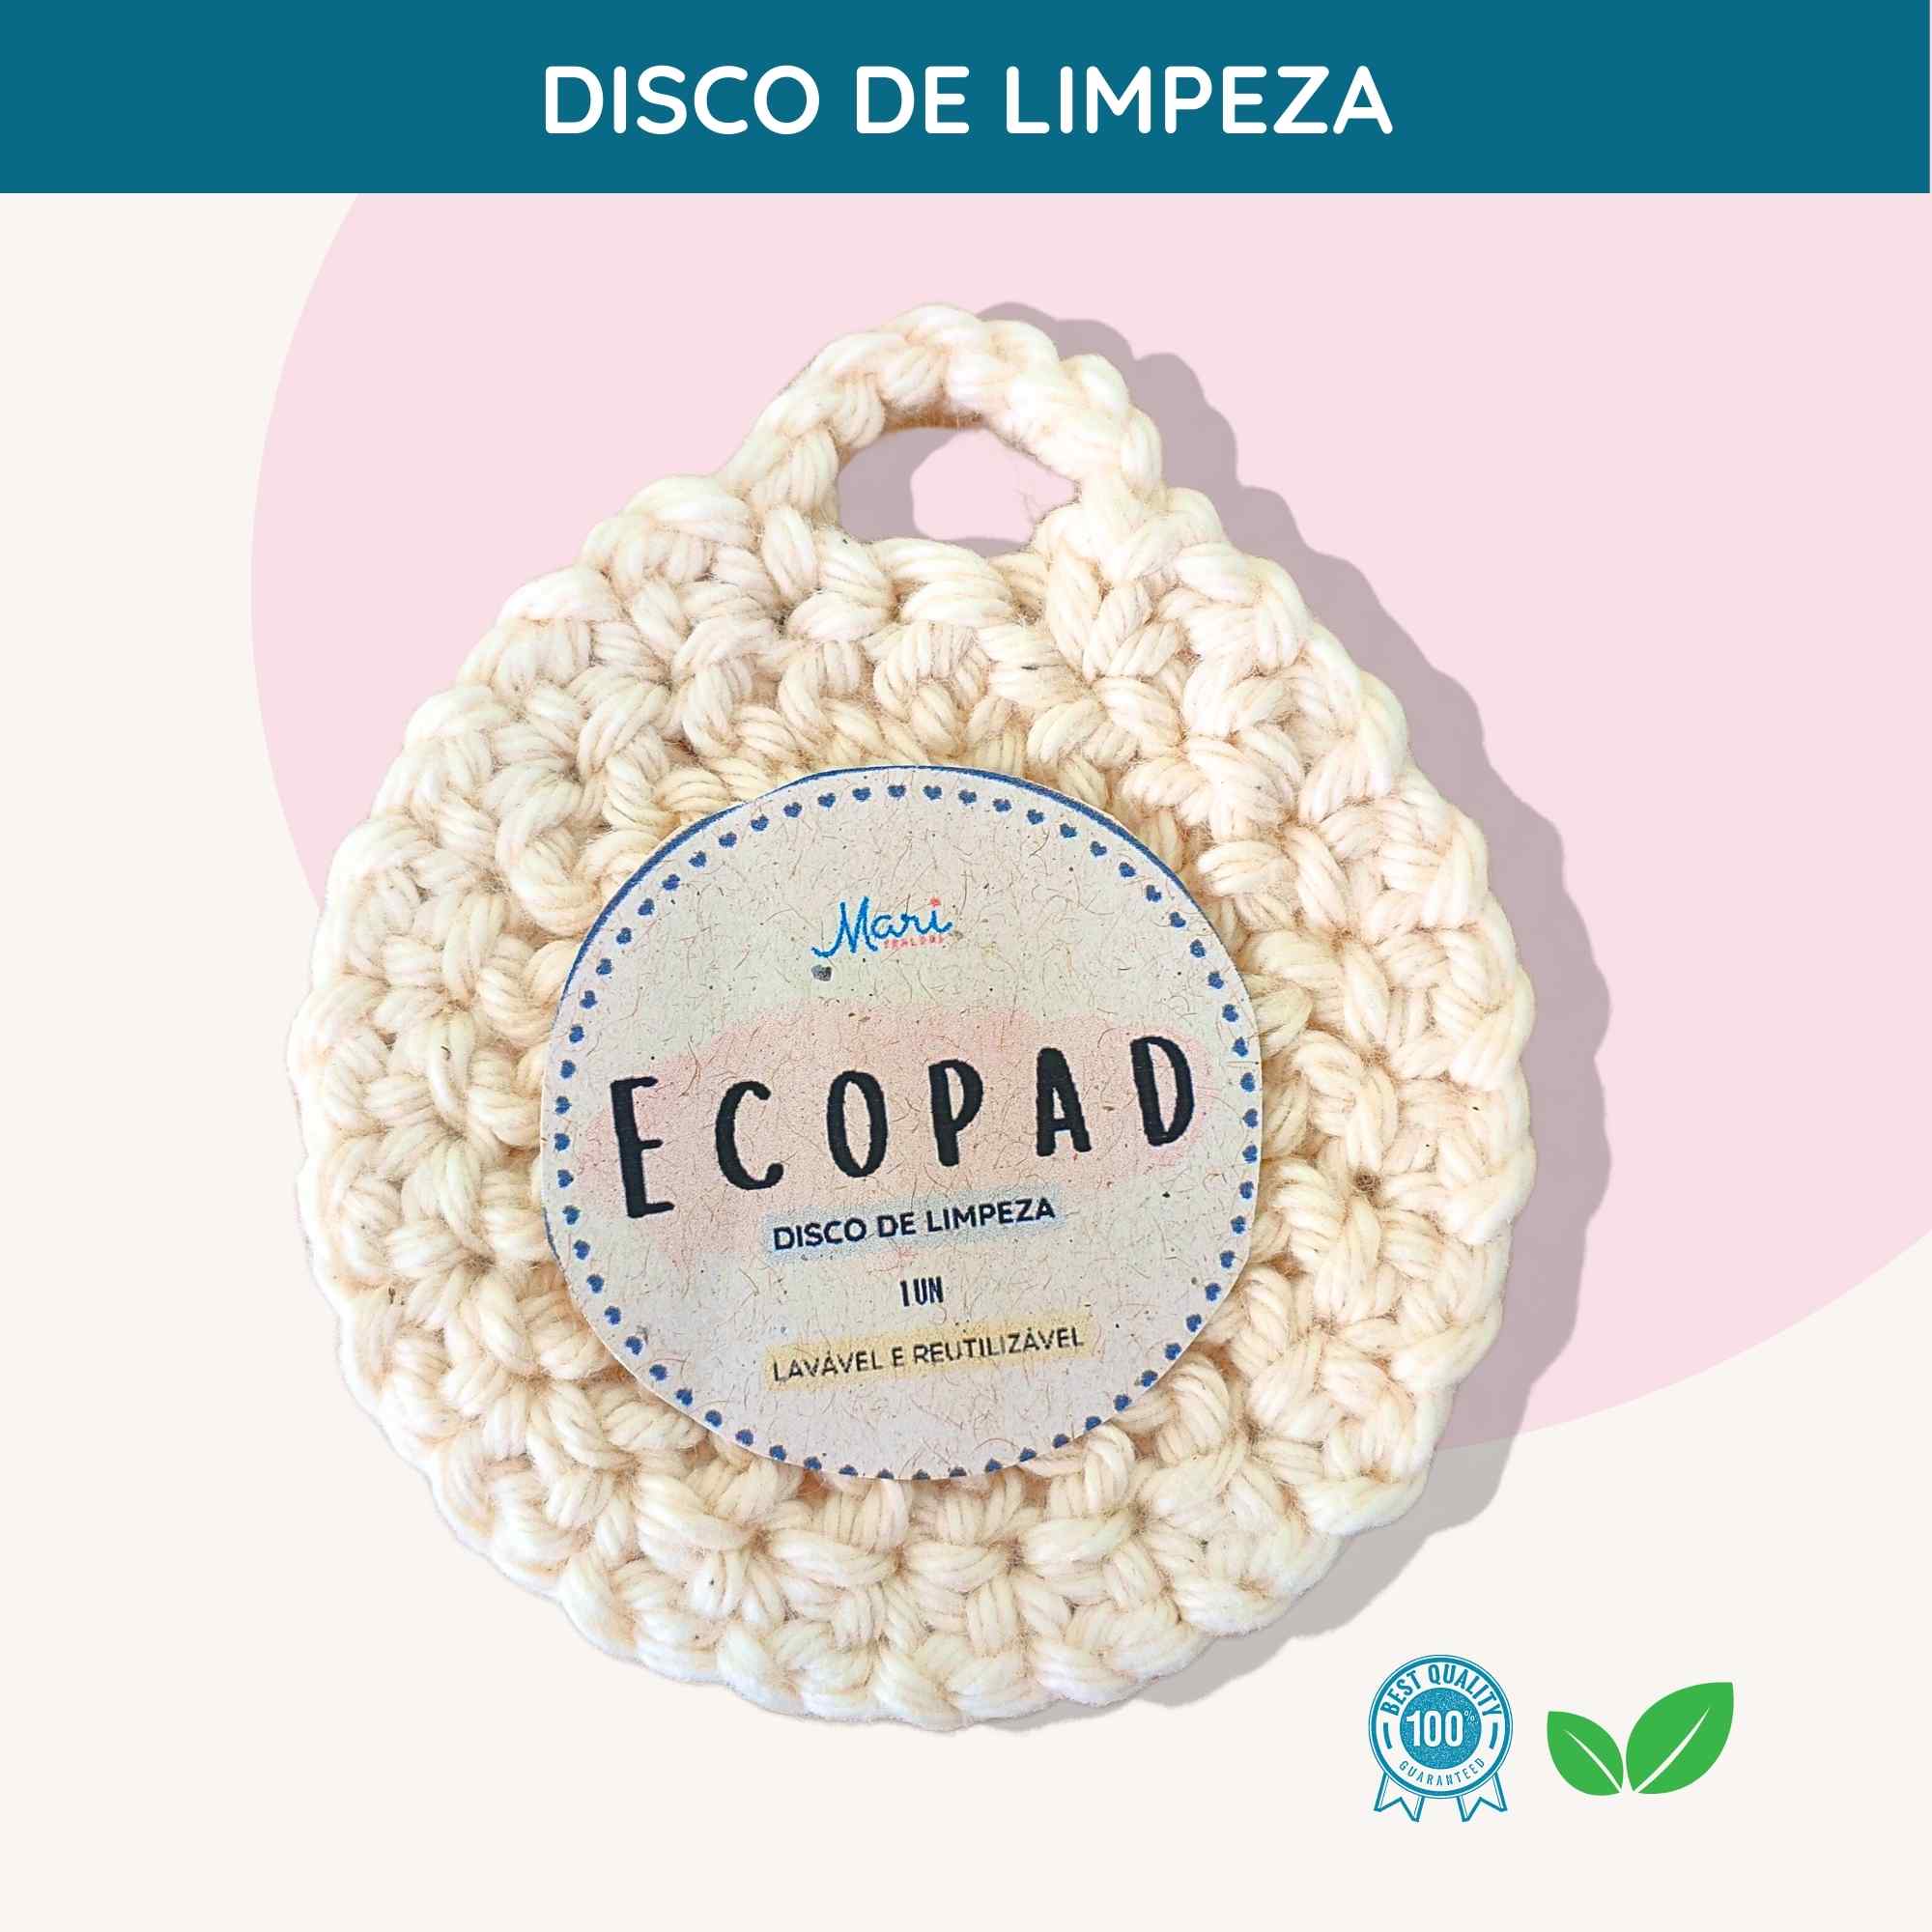 Ecopad - Disco de Limpeza (1 UN)